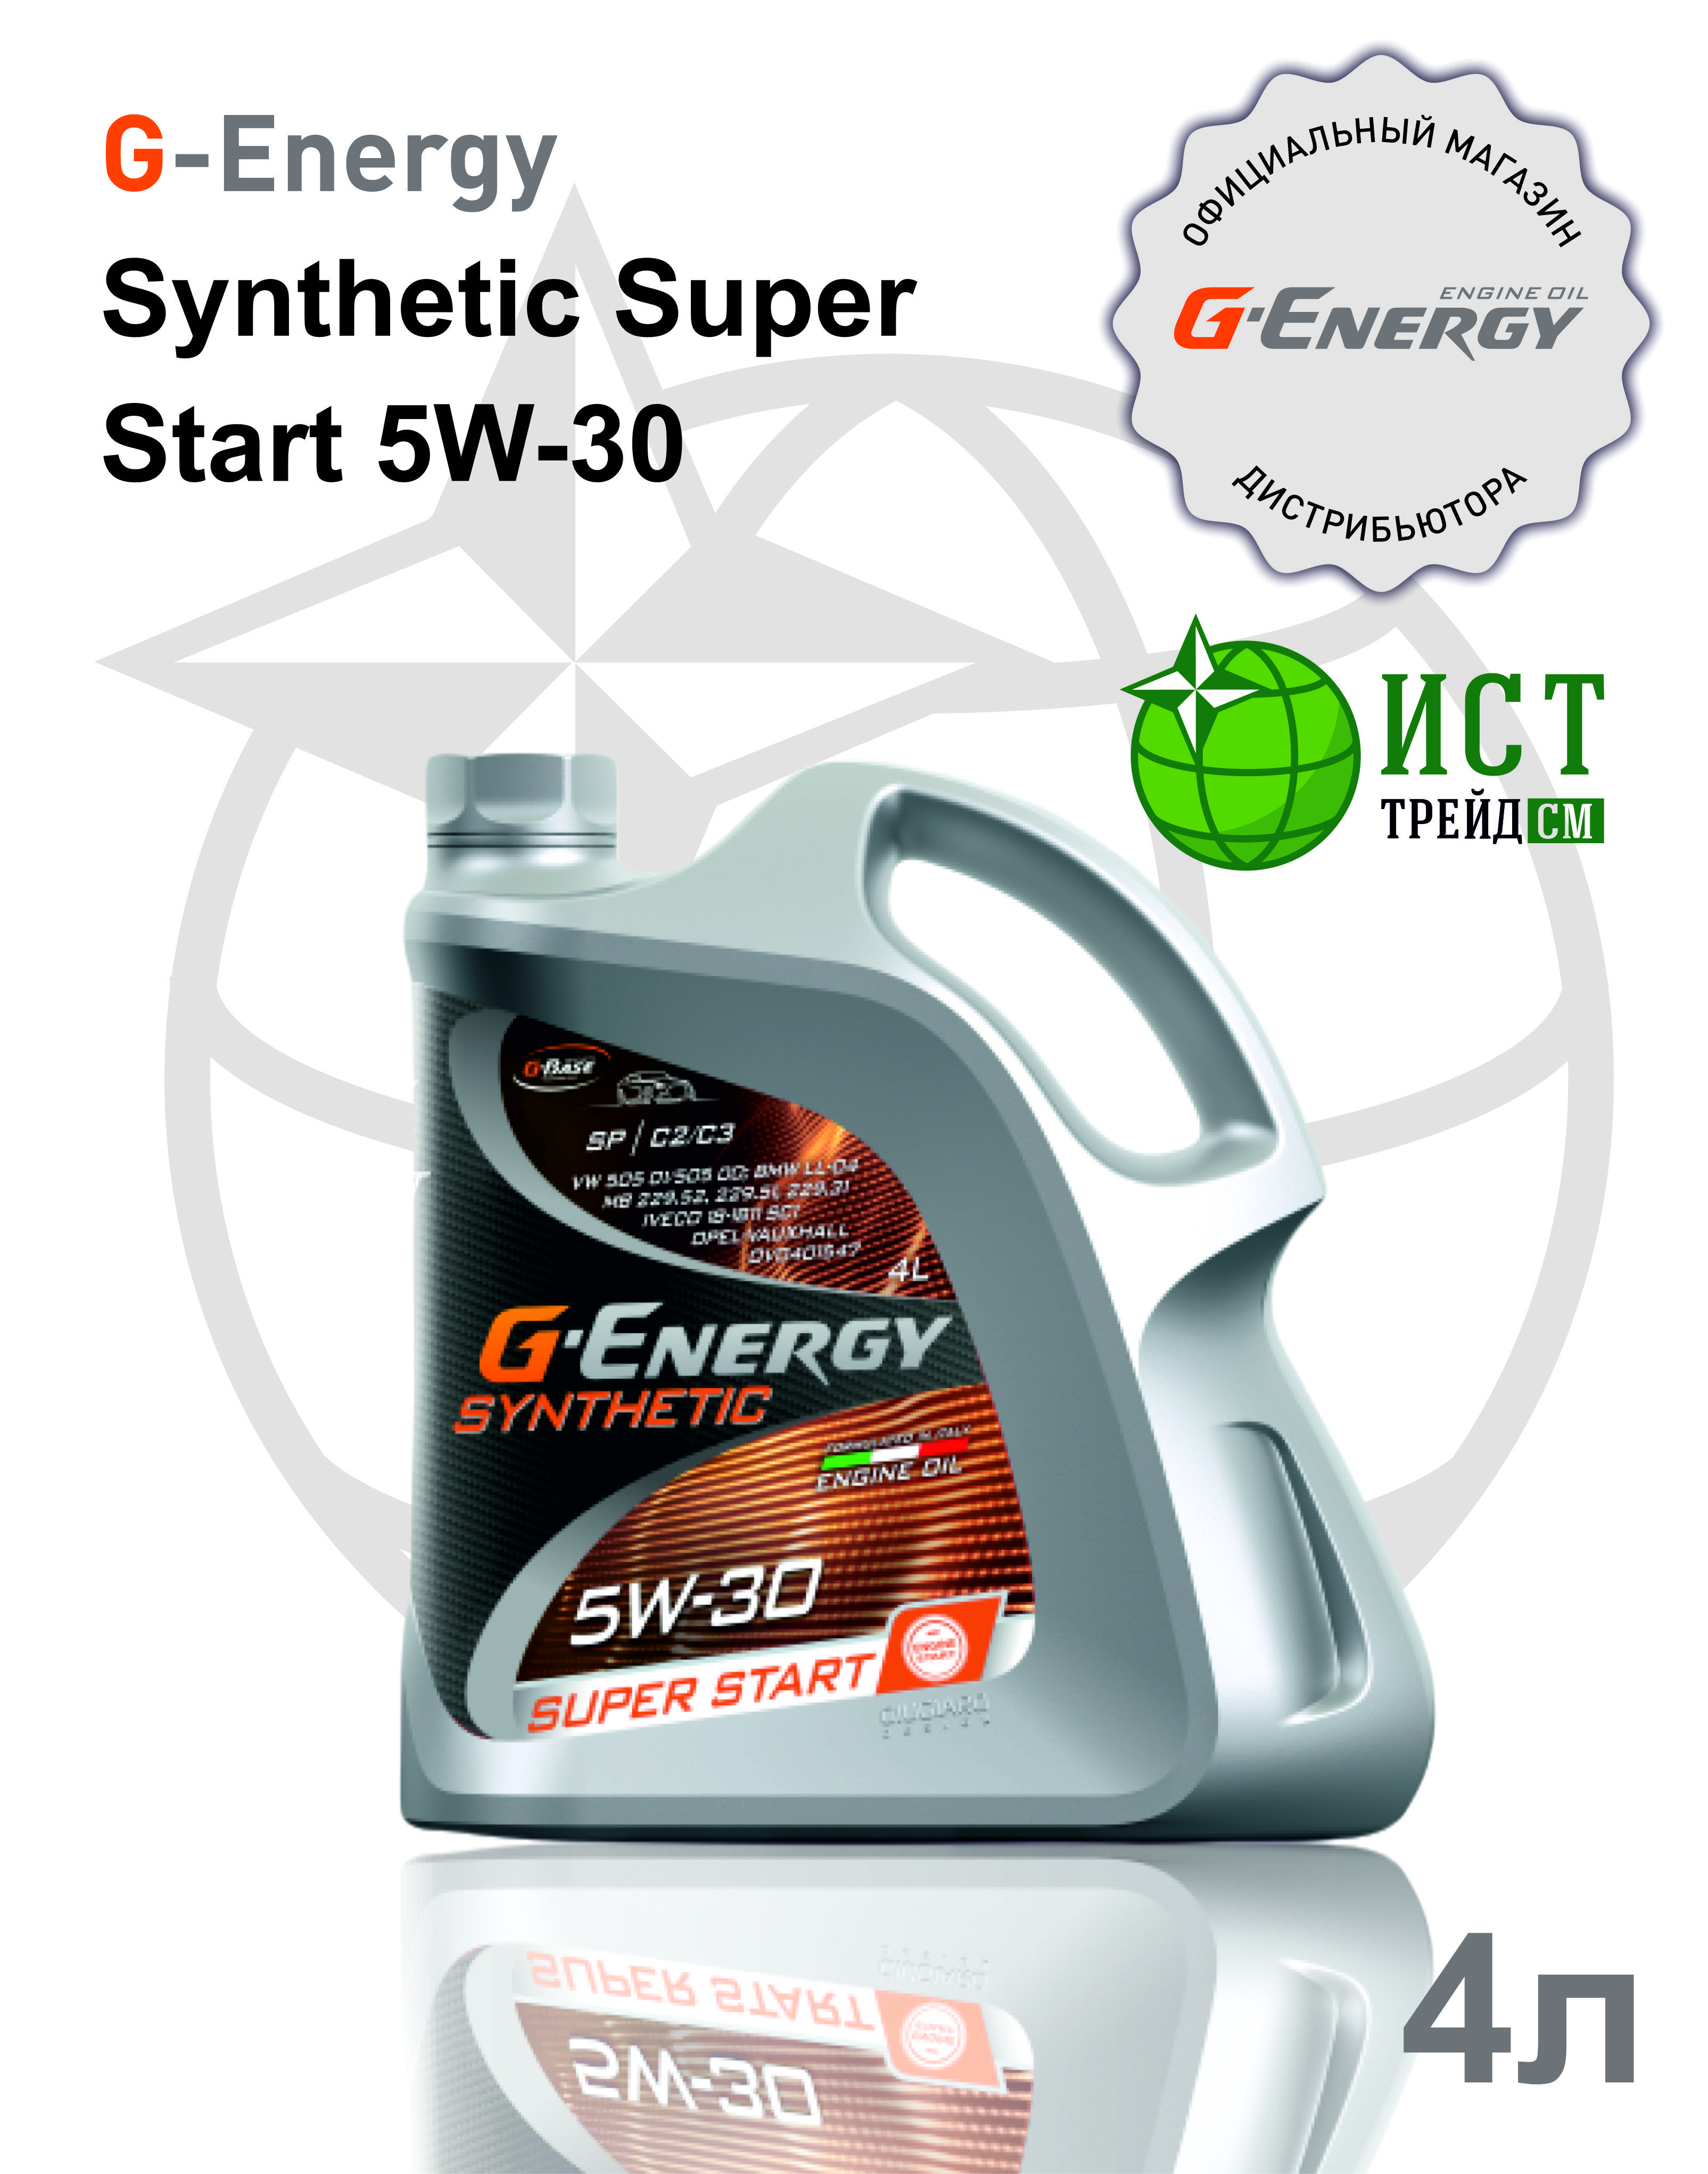 Масло g energy super start. G Energy 5w30 super start. G-Energy Synthetic super start 5w-30. G-Energy Synthetic super start 5w-30 купить. Масло g Energy 5w30 super start отзывы.